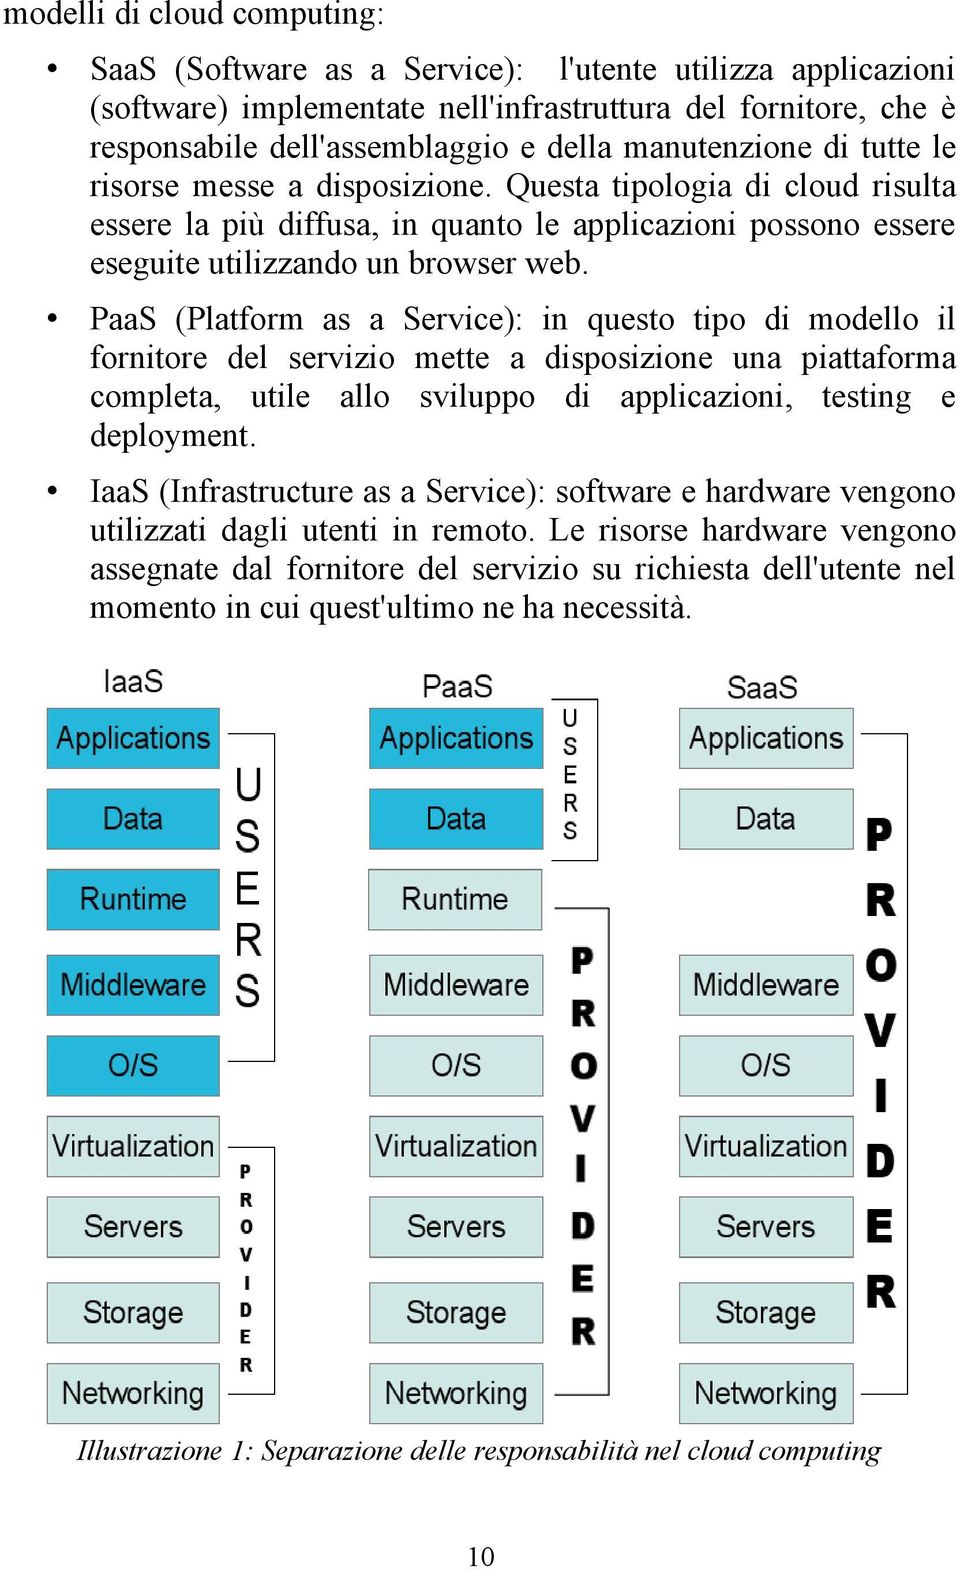 PaaS (Platform as a Service): in questo tipo di modello il fornitore del servizio mette a disposizione una piattaforma completa, utile allo sviluppo di applicazioni, testing e deployment.